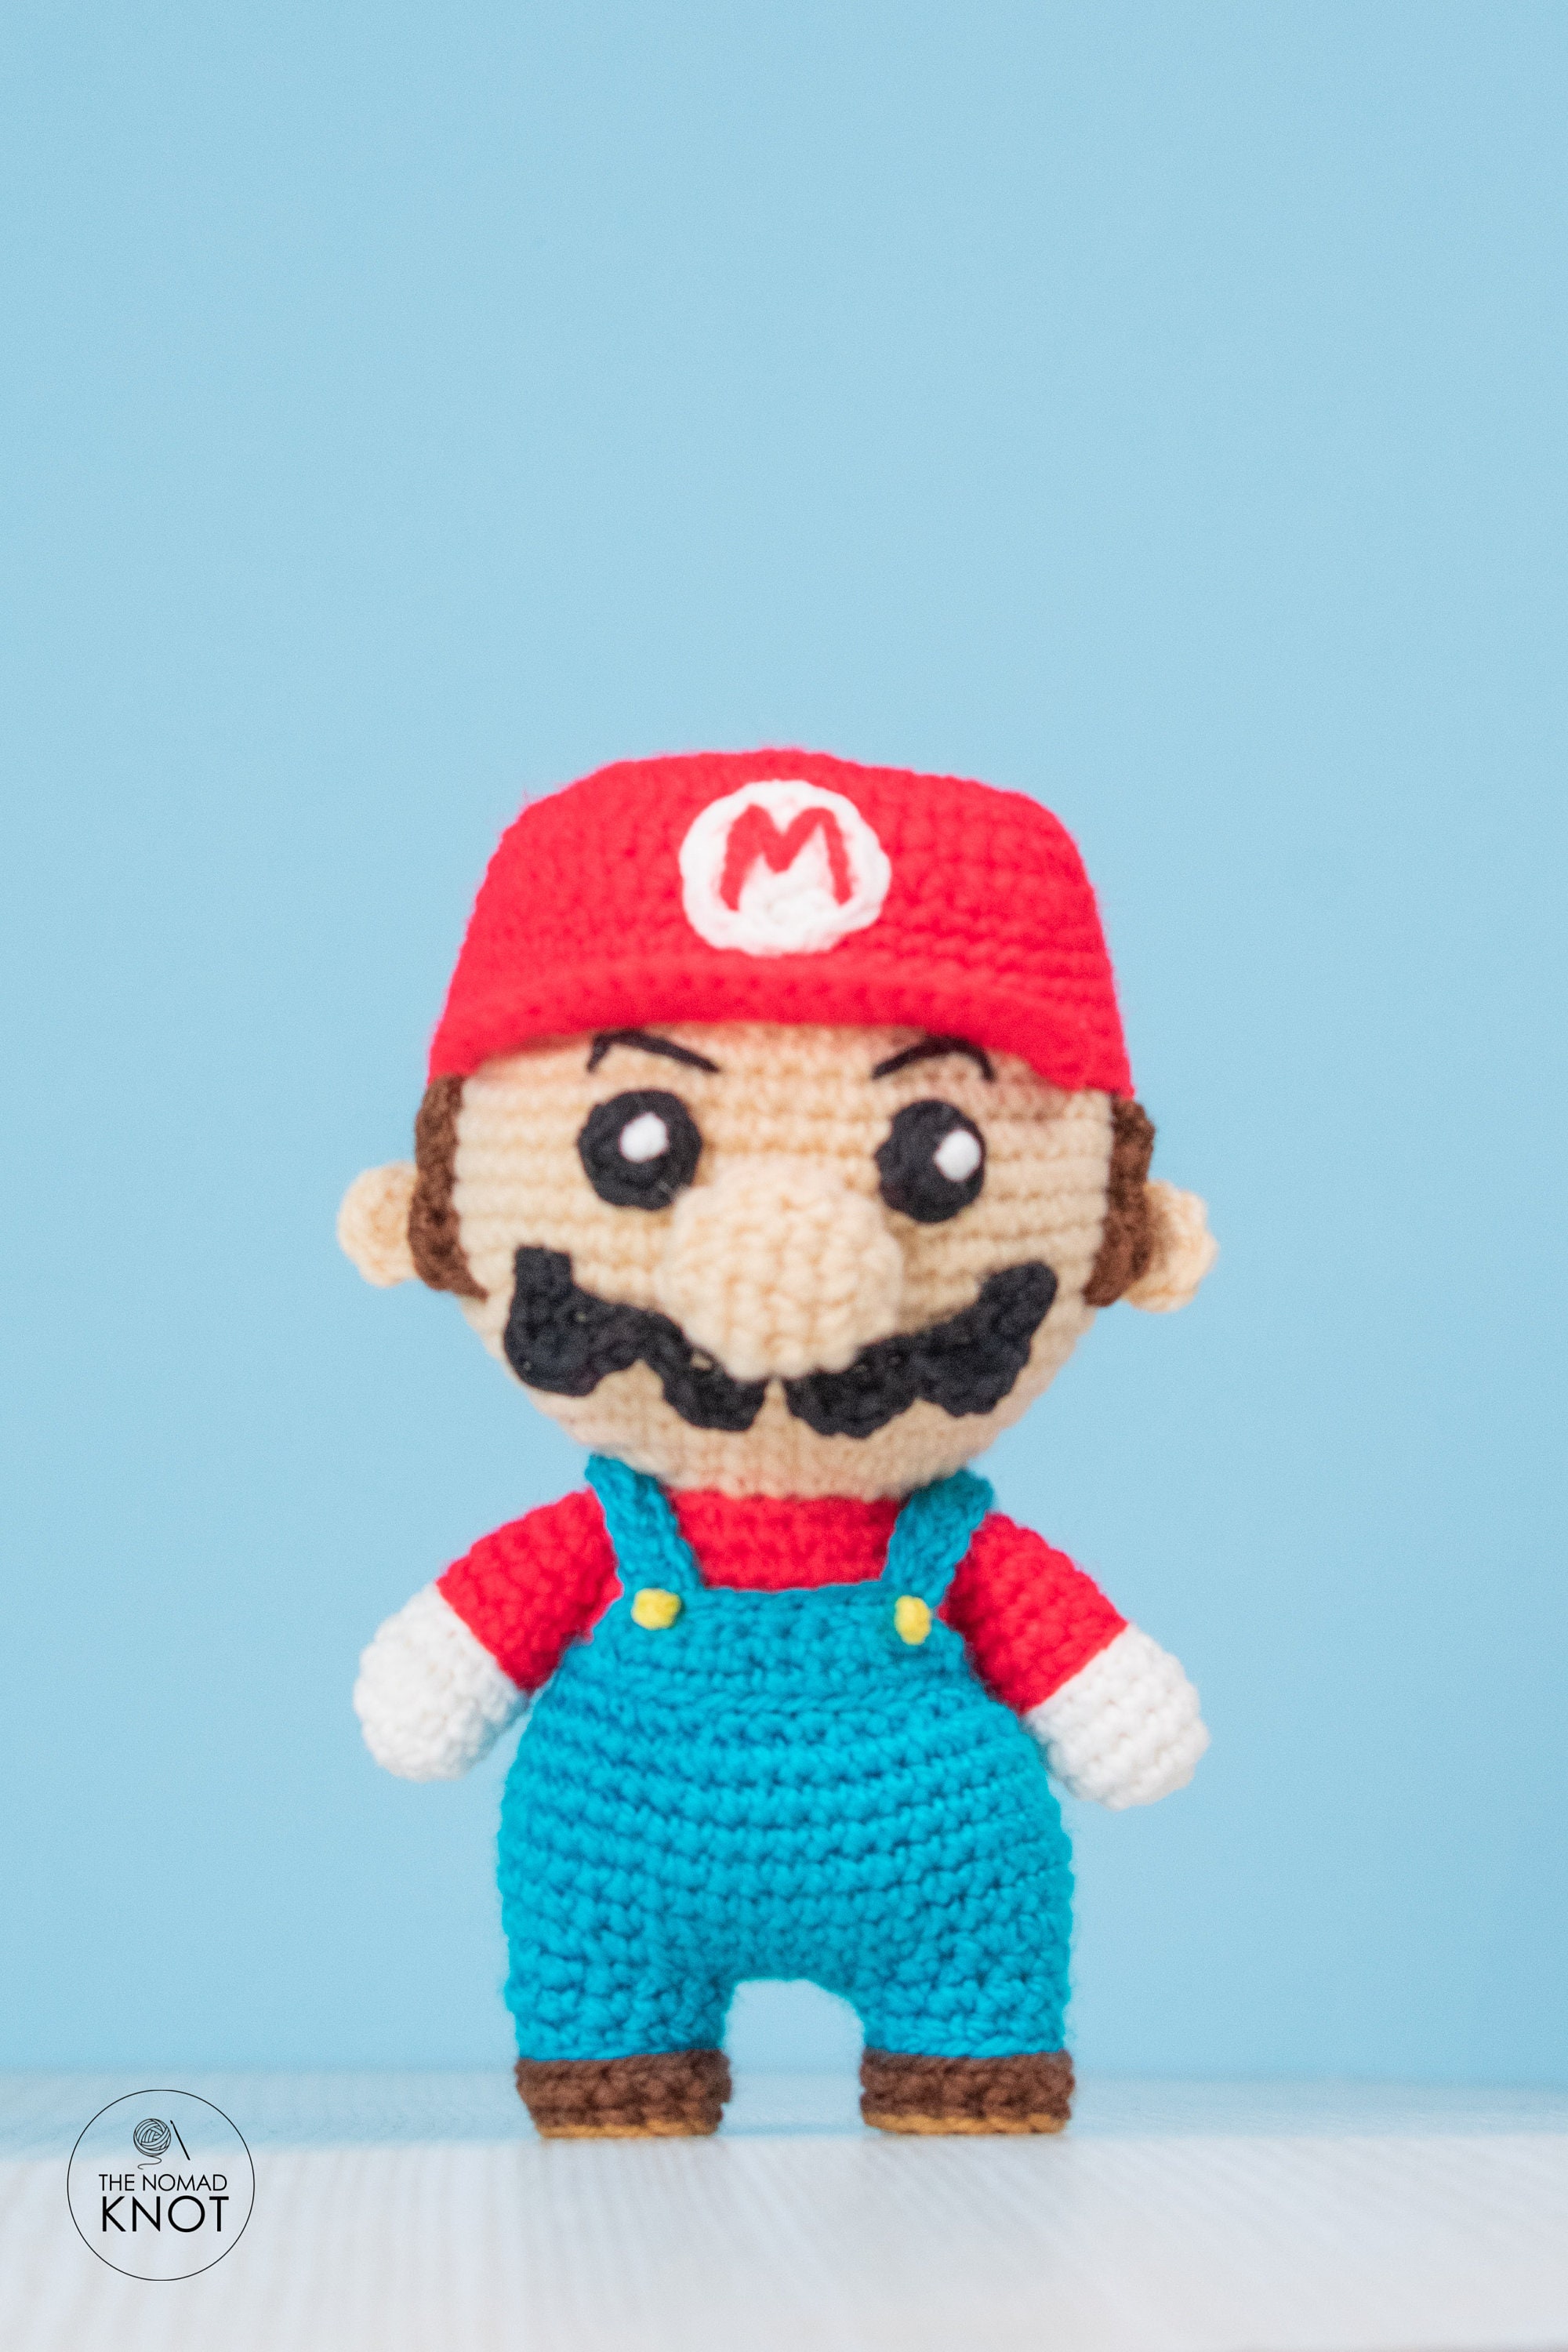 Super Mario Crochet Patterns: Crochet Patterns For Super Mario Fans ...